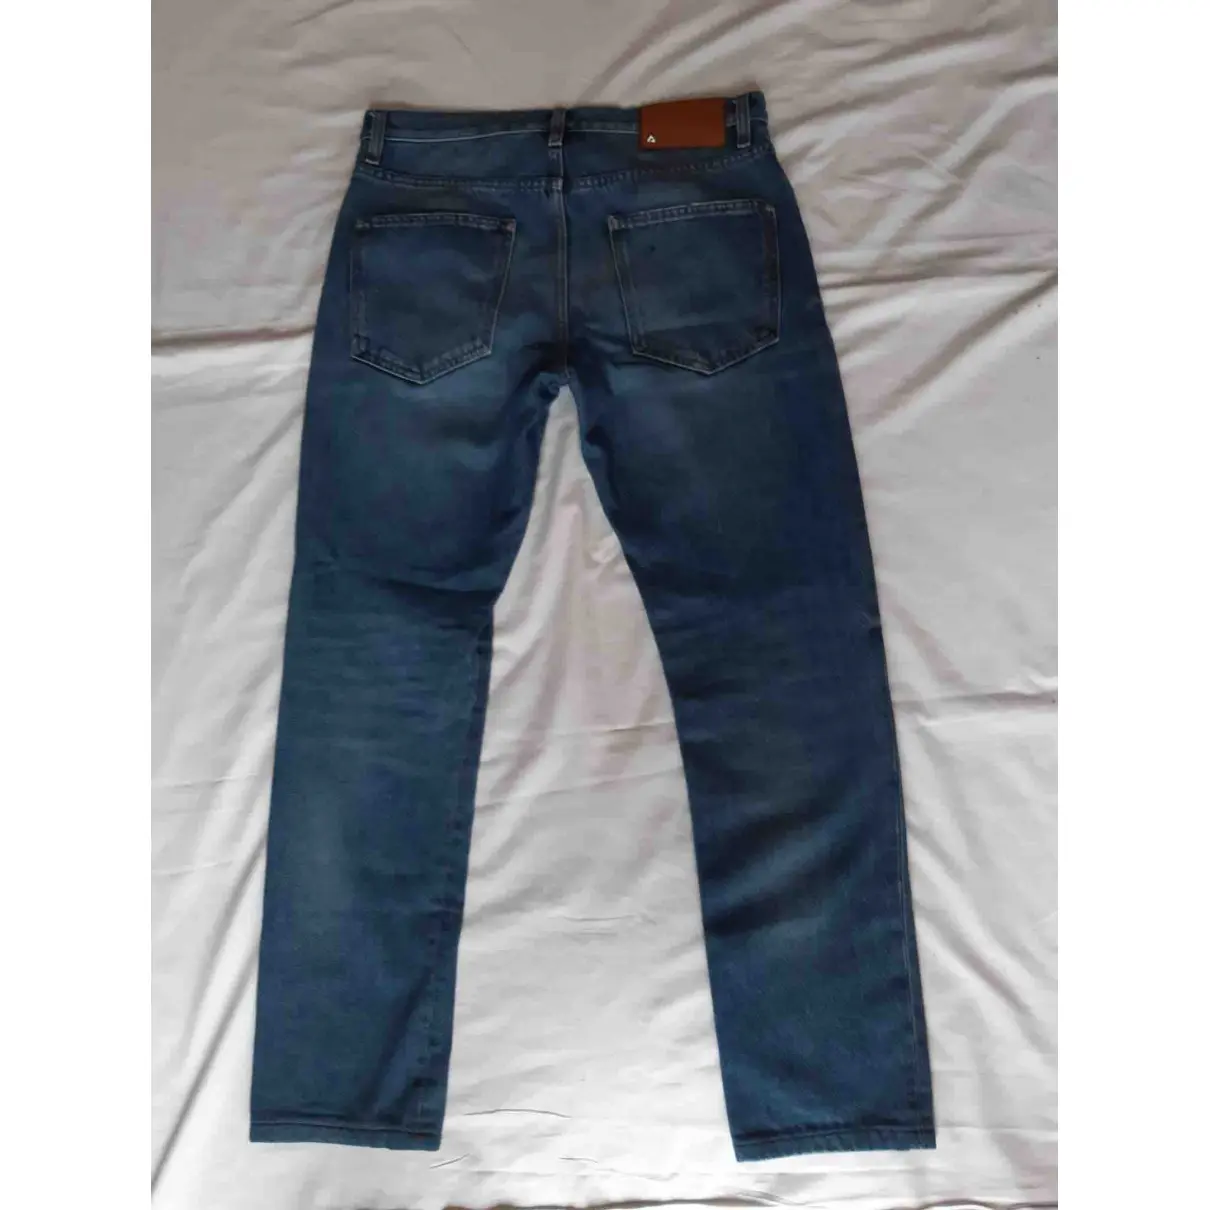 Buy Valentino Garavani Cotton Jeans online